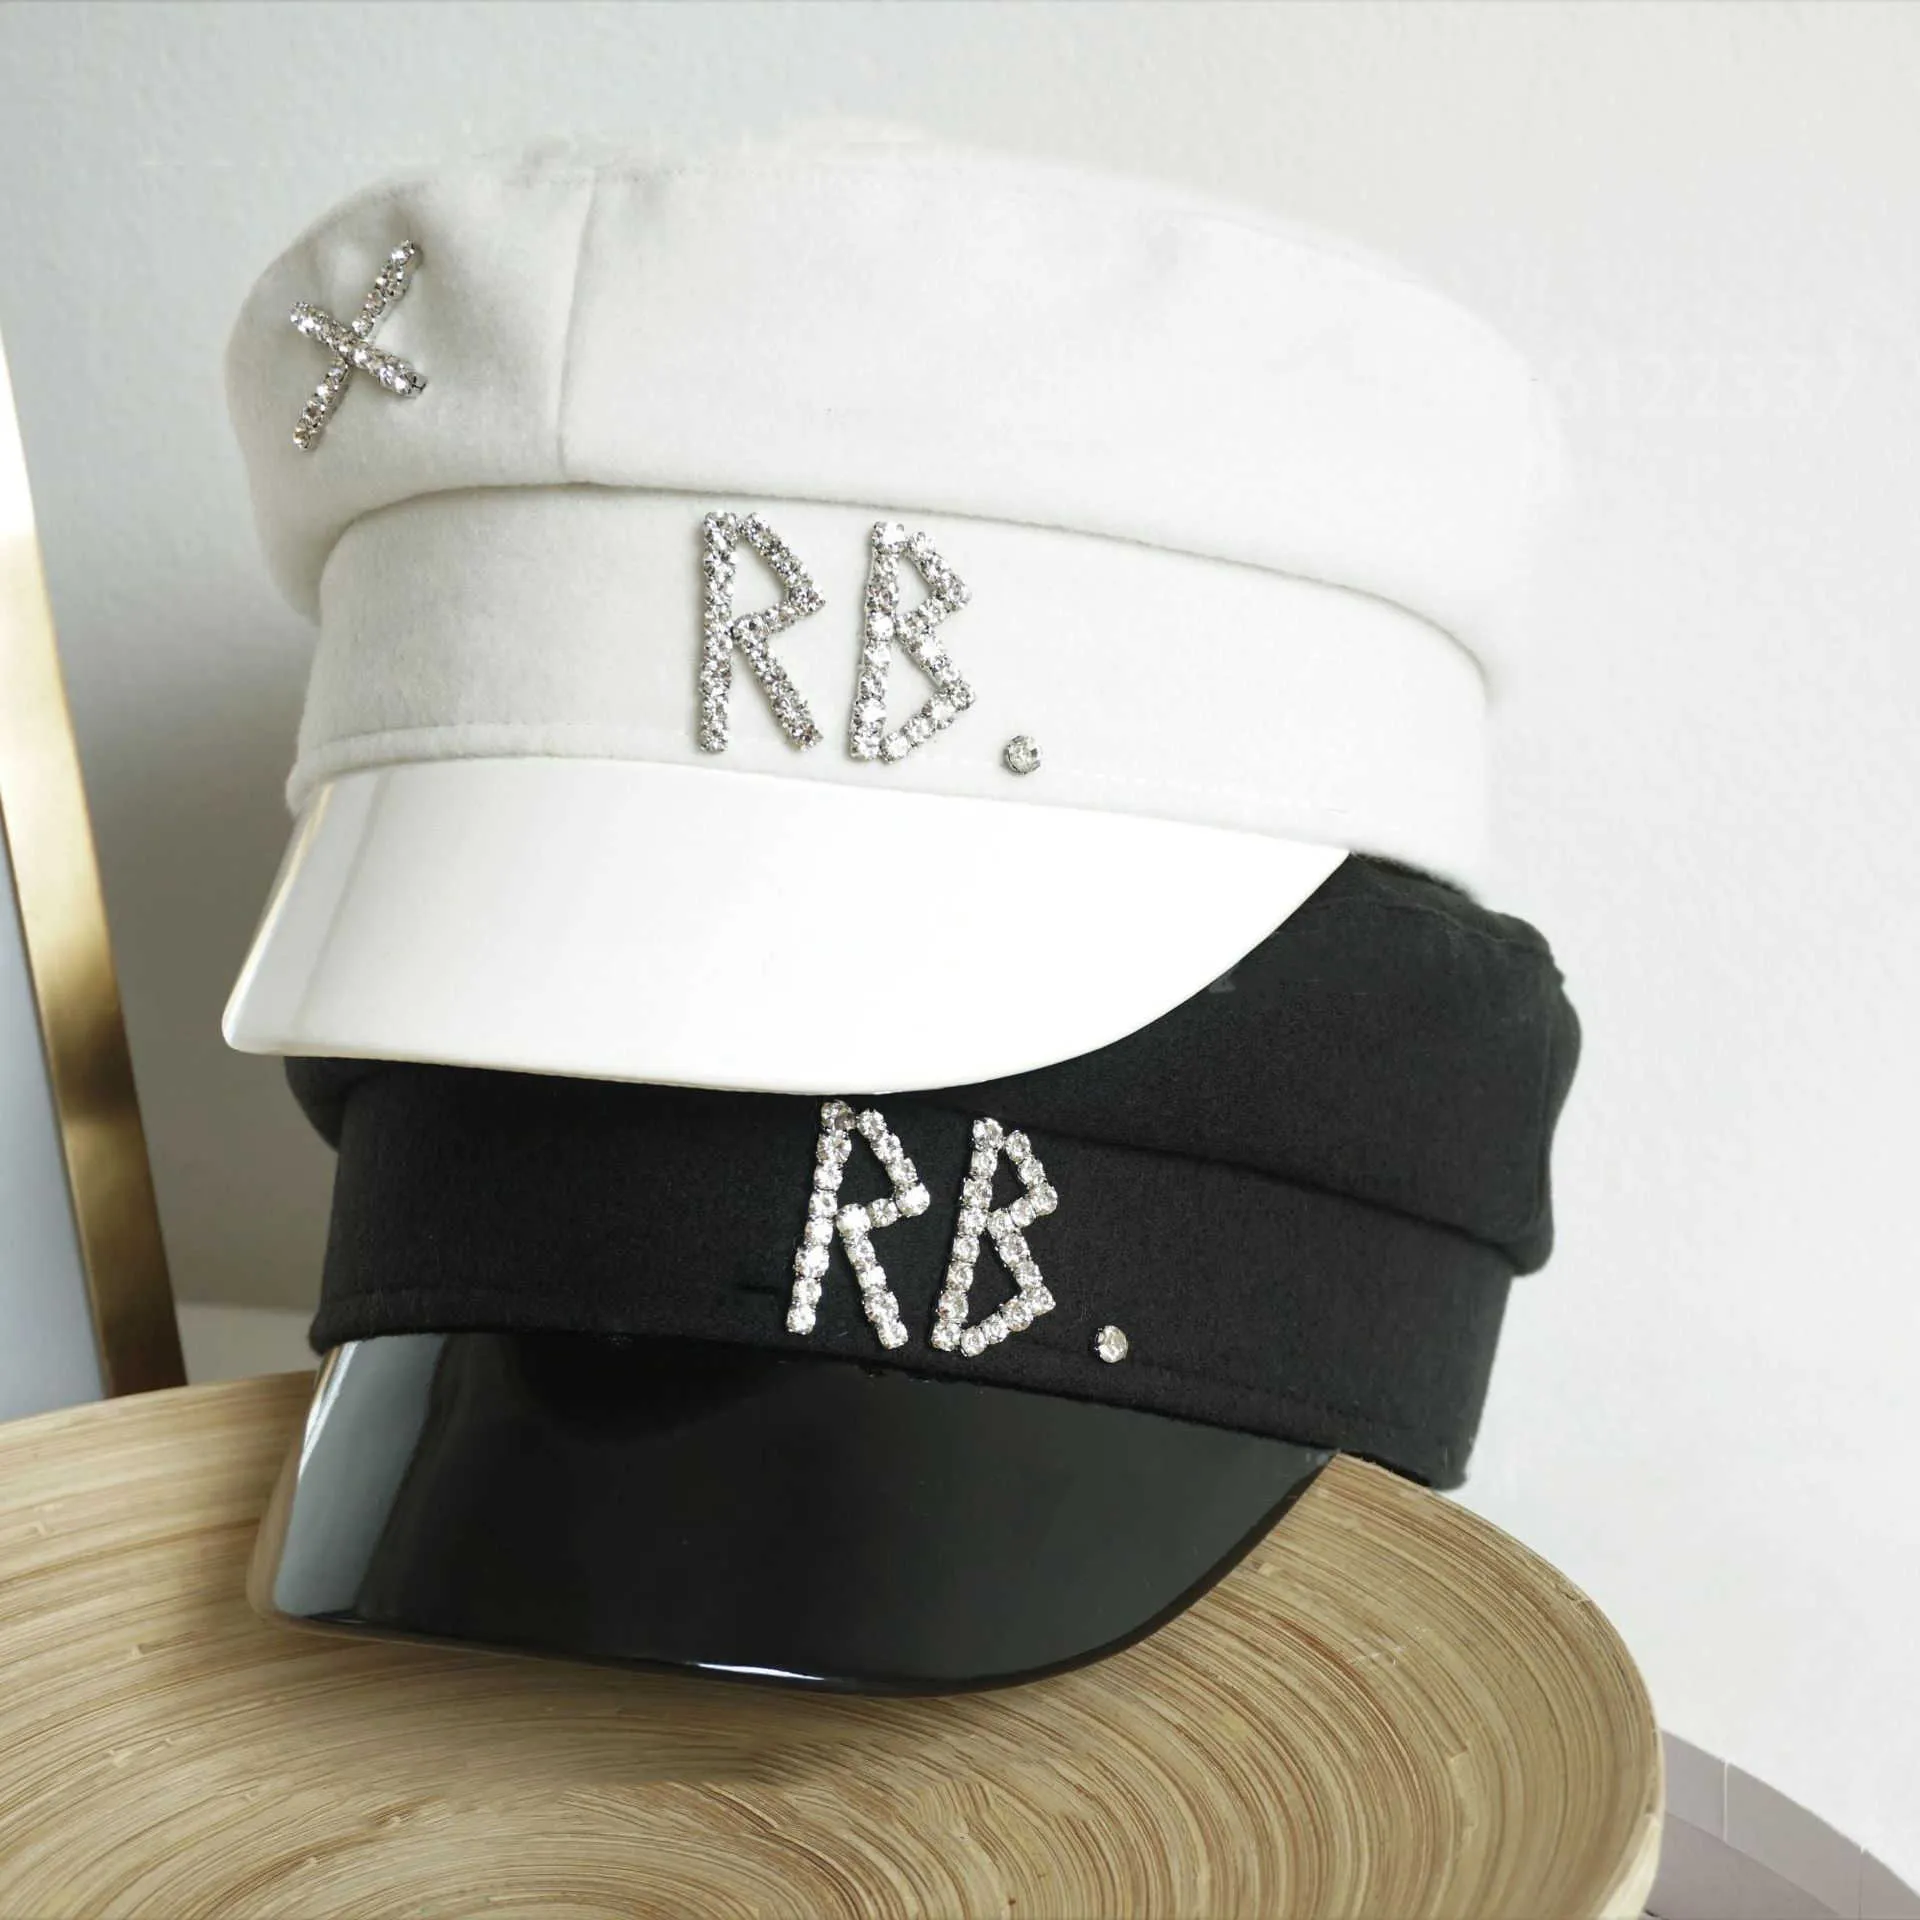 Nouvelles femmes 039s casquettes gavroche chapeau en cristal mode béret en Tweed casquette plate chapeau de la marine britannique automne et hiver rétro casquettes gavroche BL0068975690